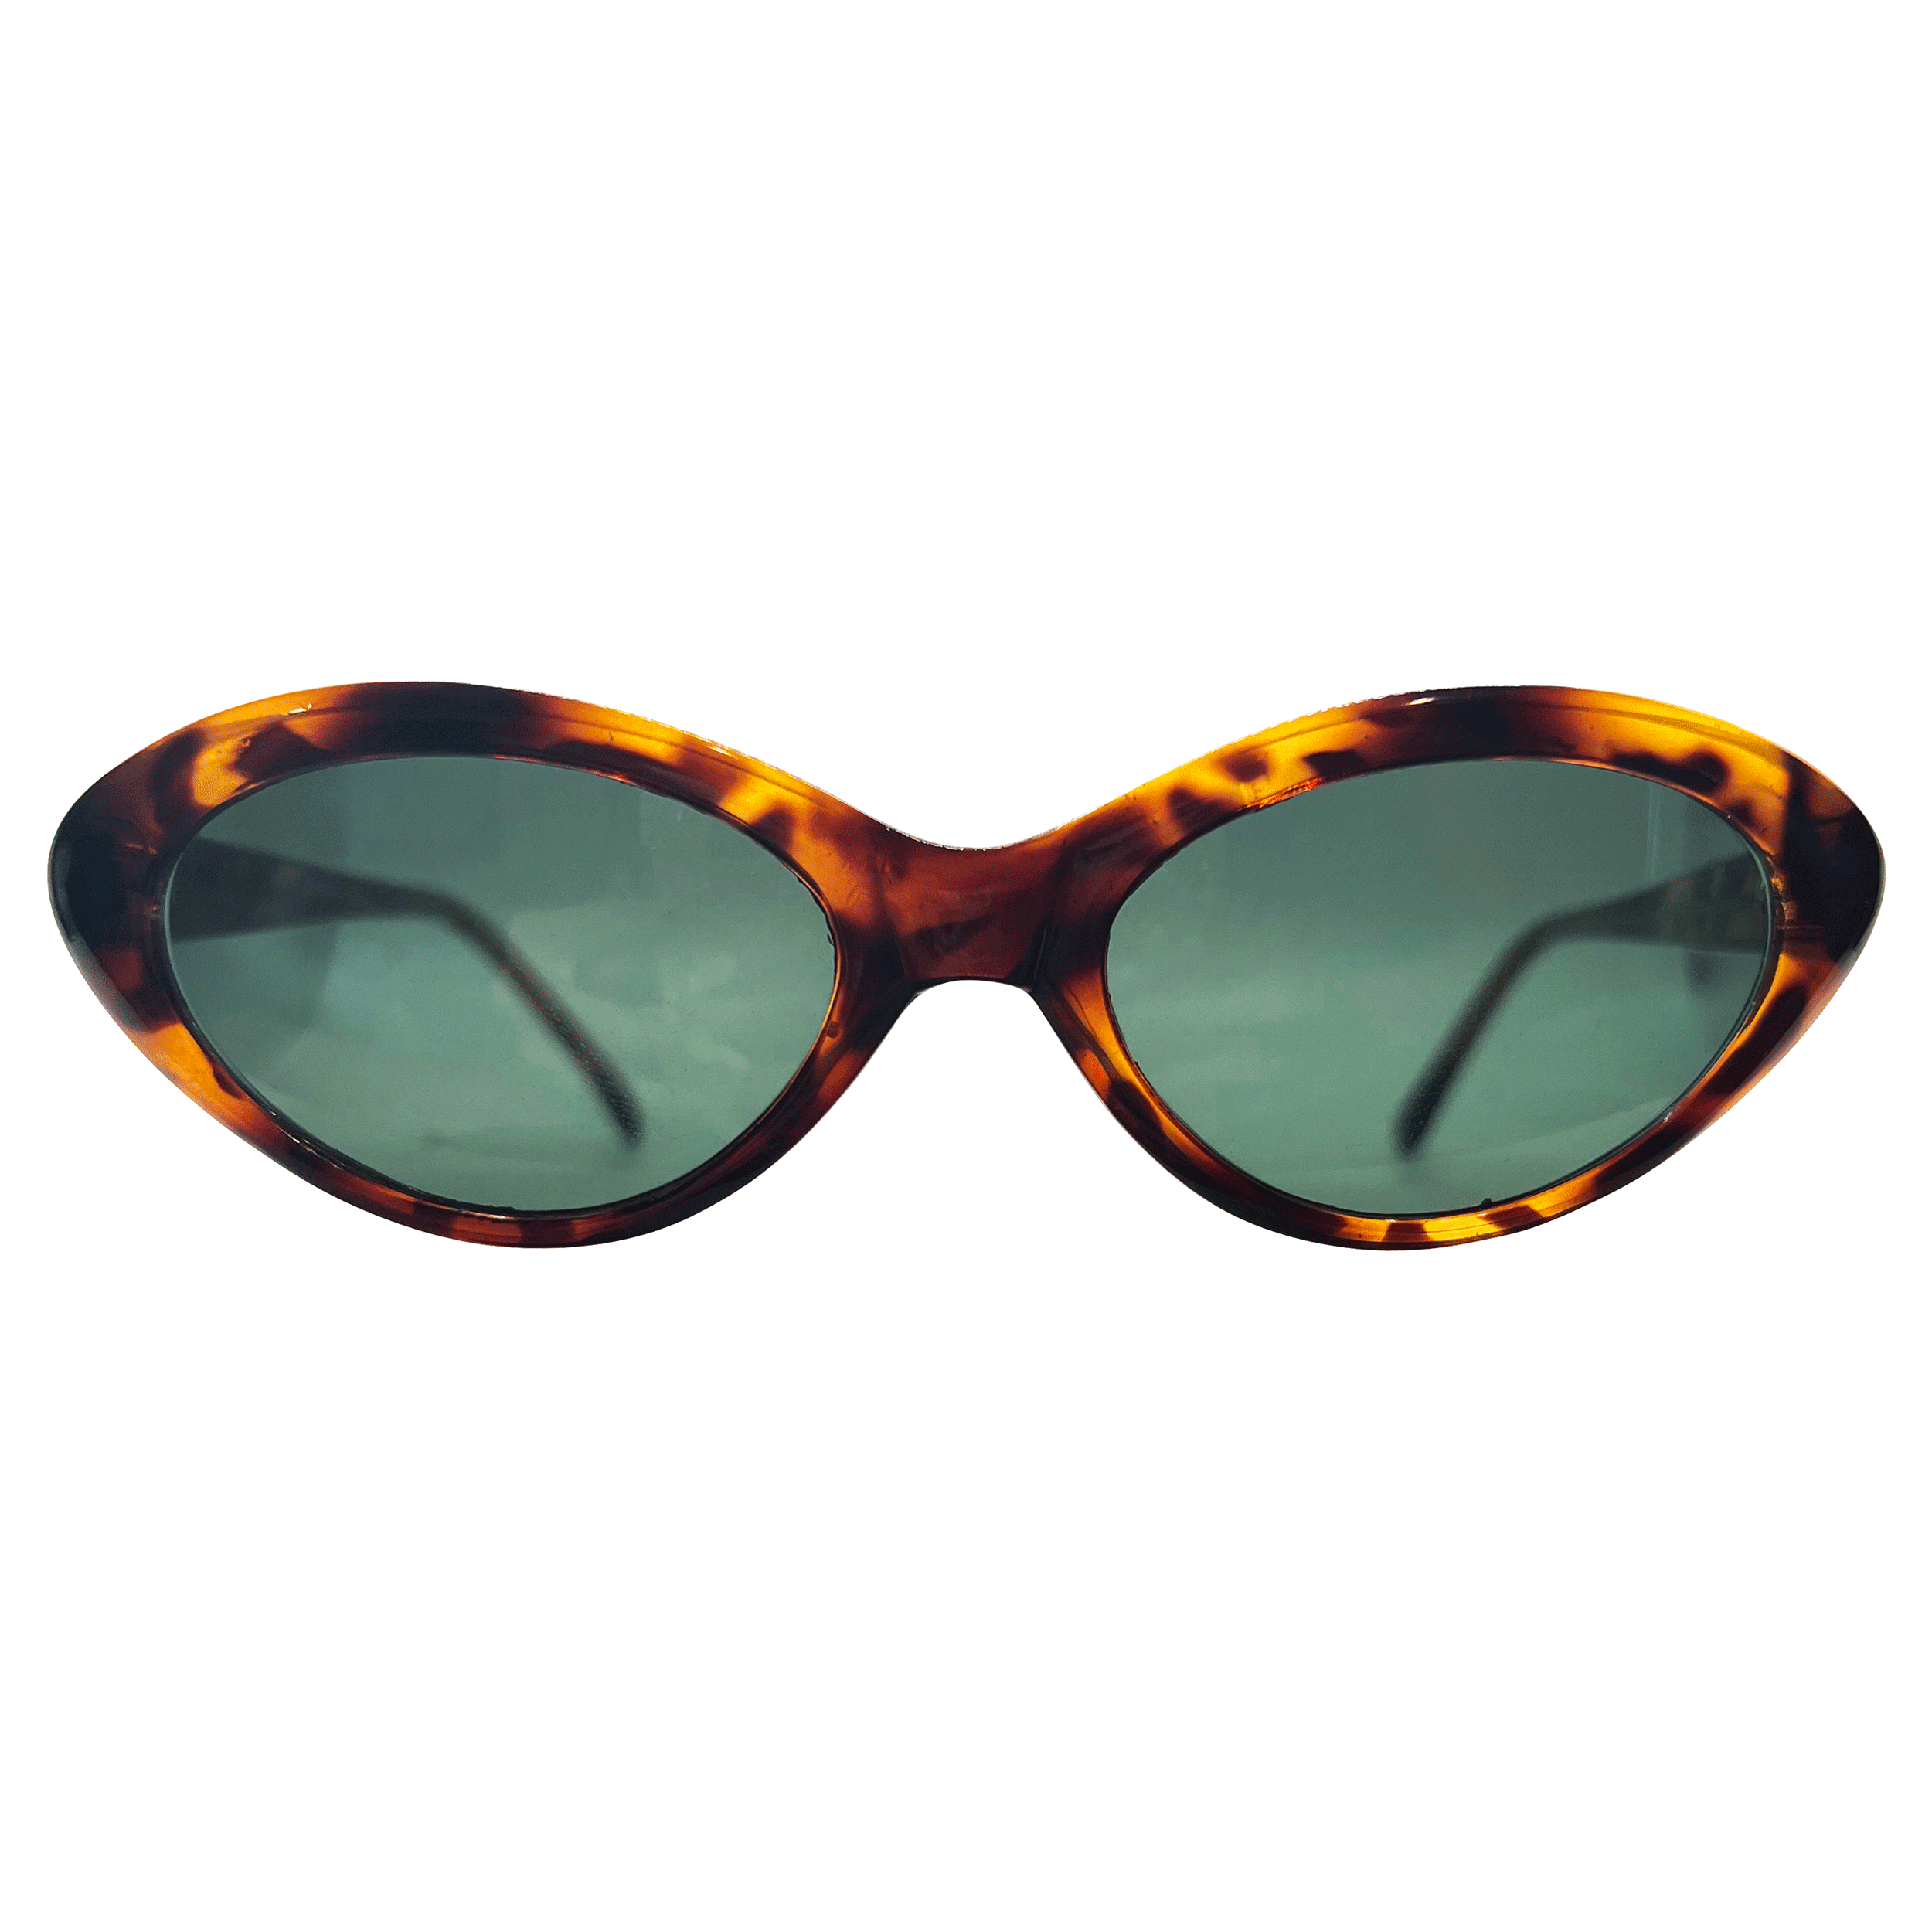 VIGIL Demi/Super Dark Classic Cat-Eye Sunglasses